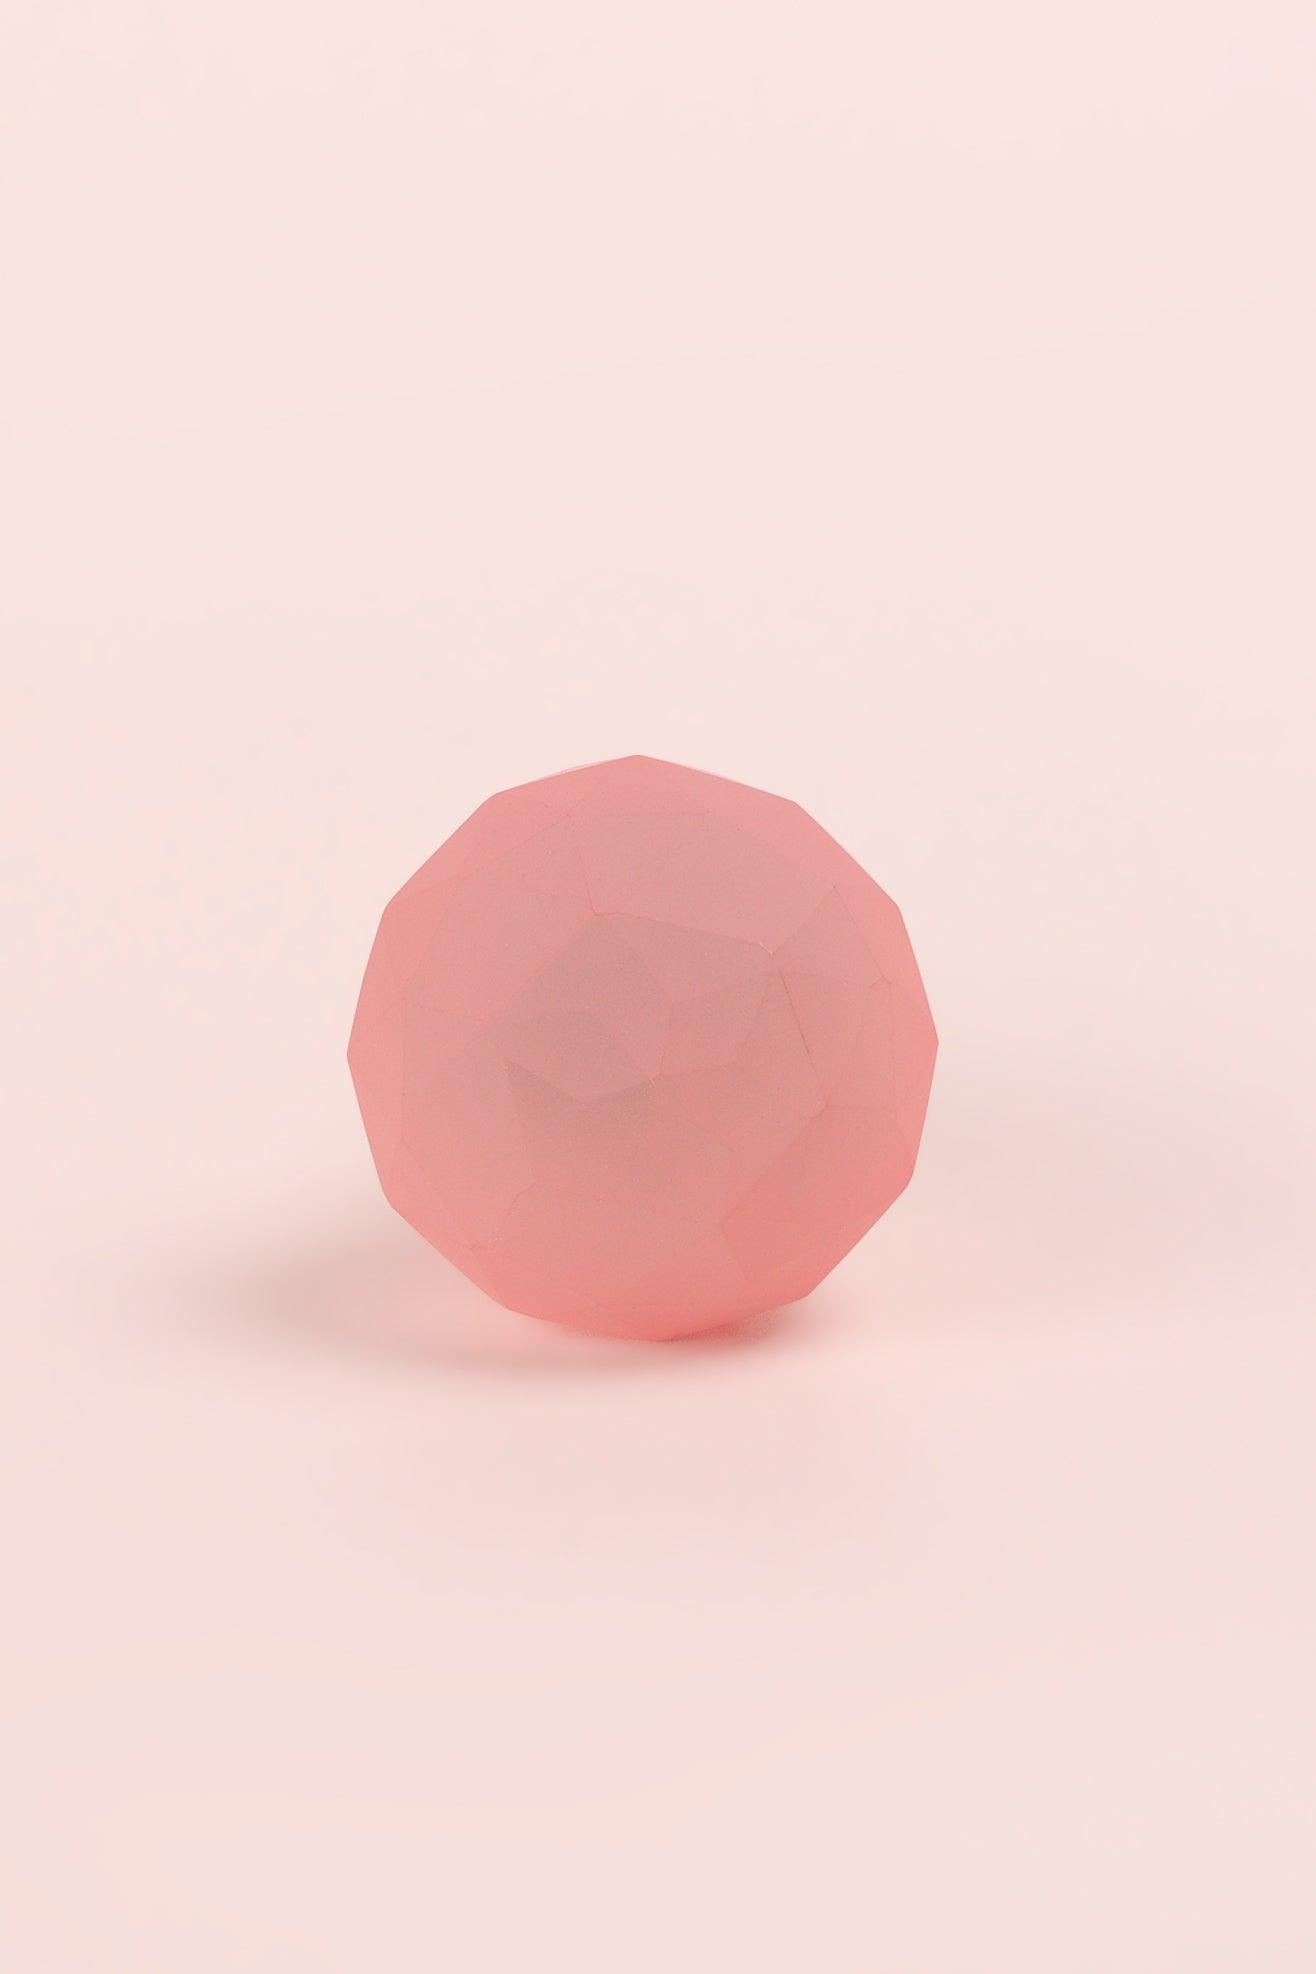 Gdecorstore Door Knobs & Handles Pink Diamond Ball Stylish Matt Glass Knobs